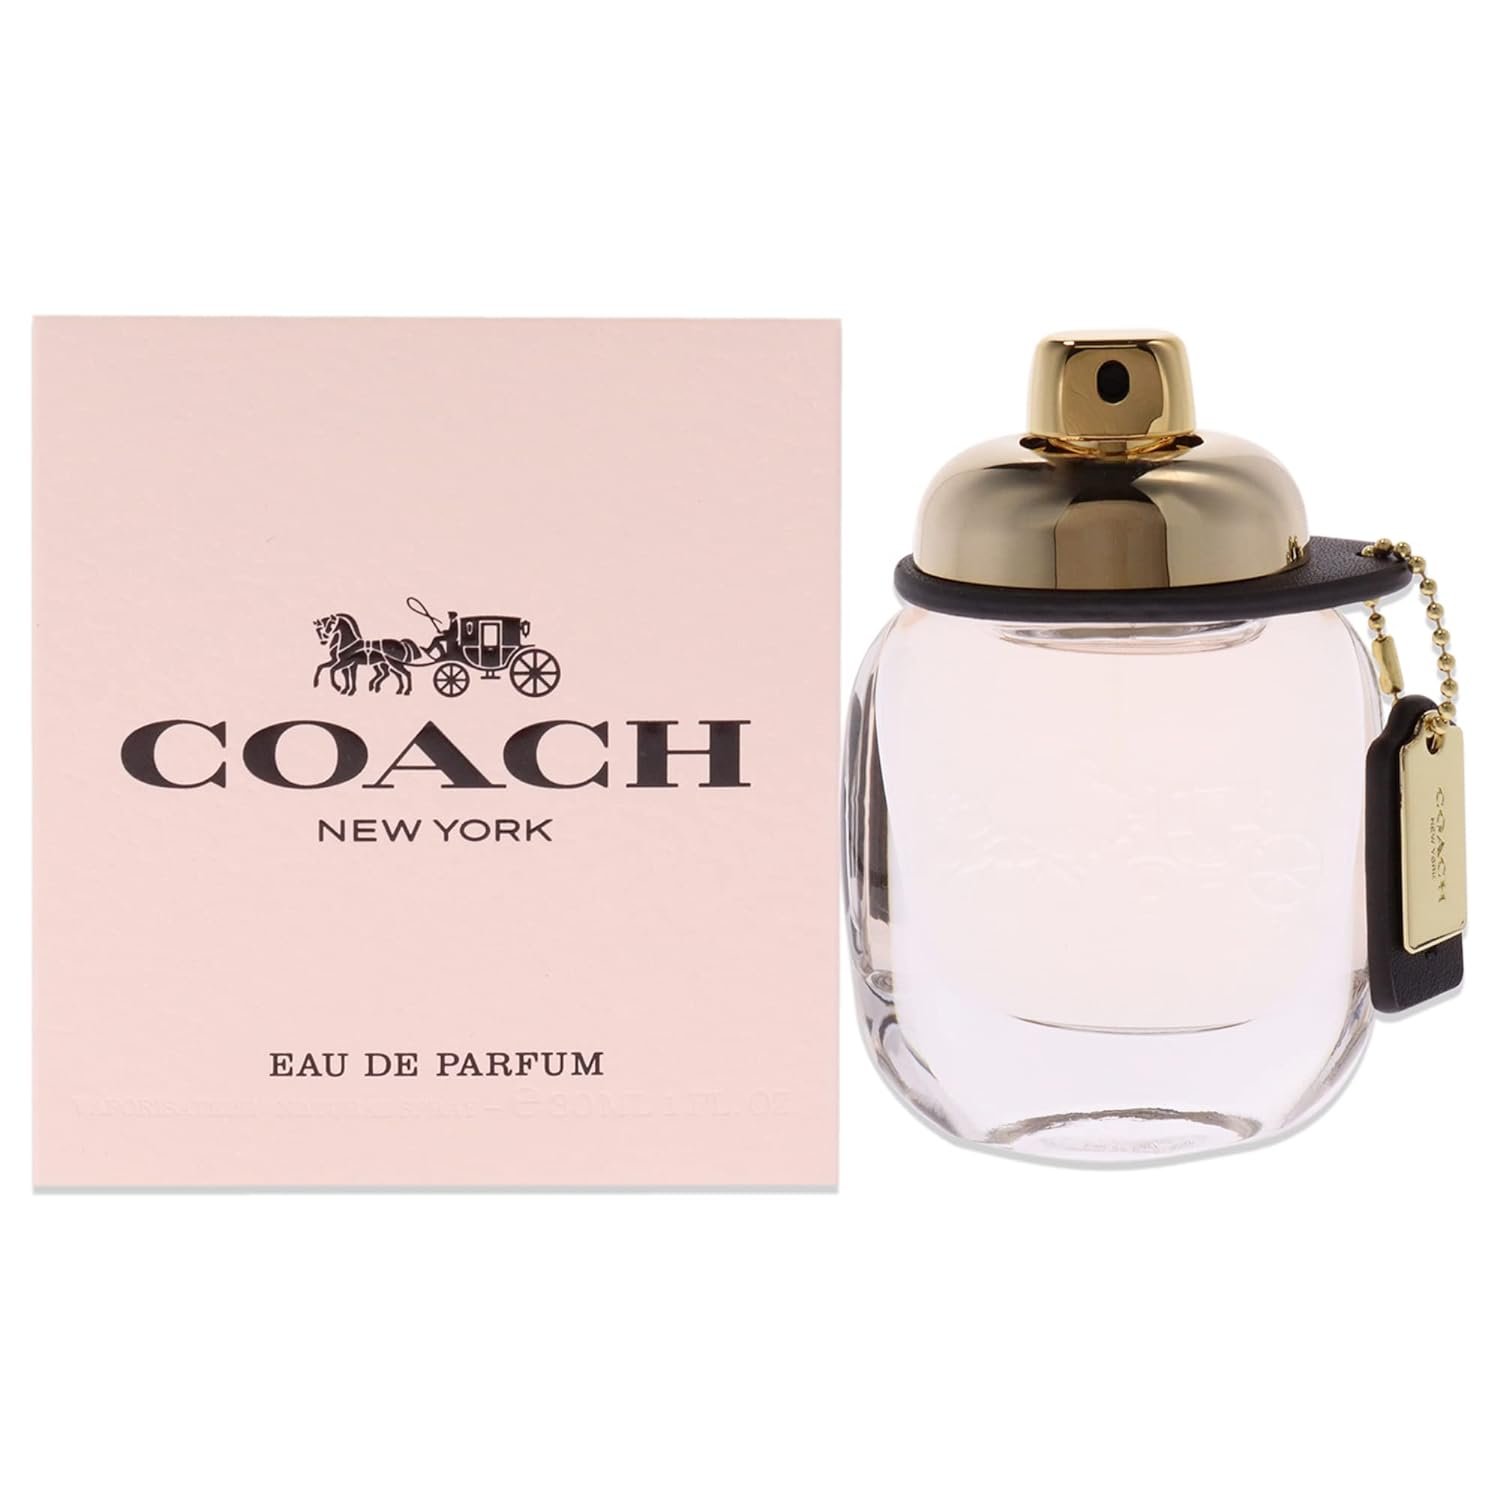 Coach Eau De Parfum Review